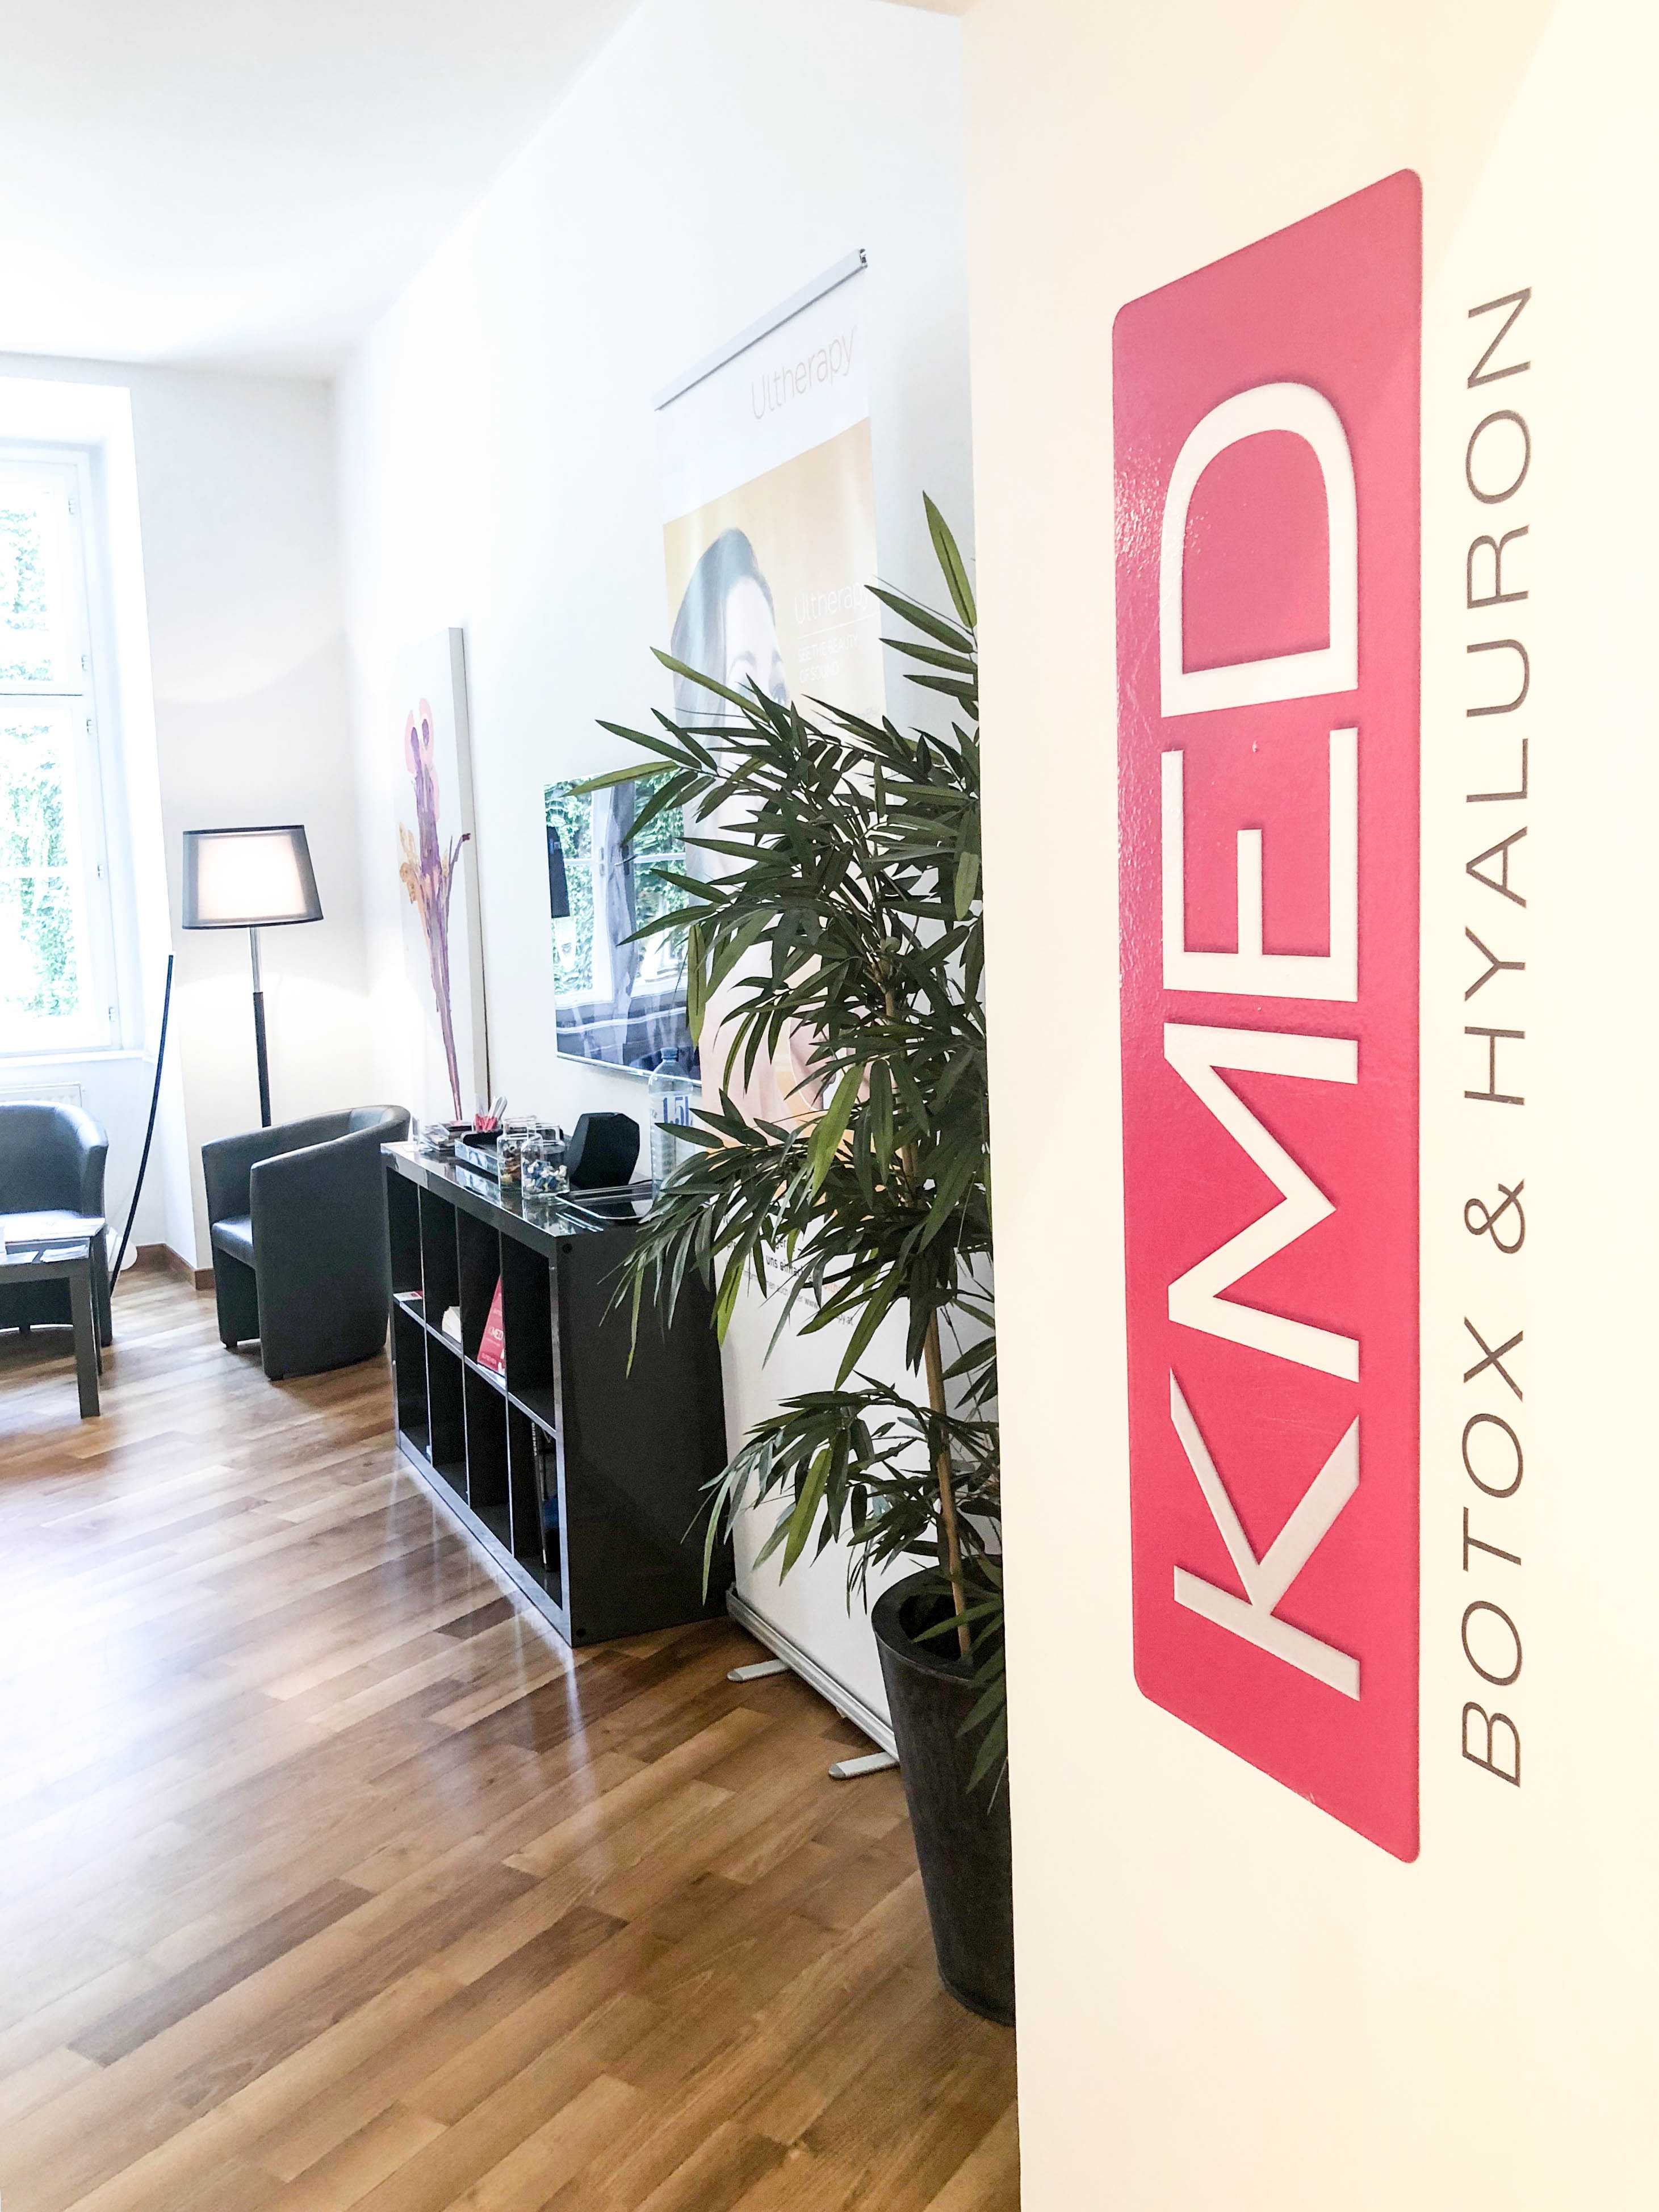 Erfahrungsbericht: Mein Besuch im KMED Institut in Wien